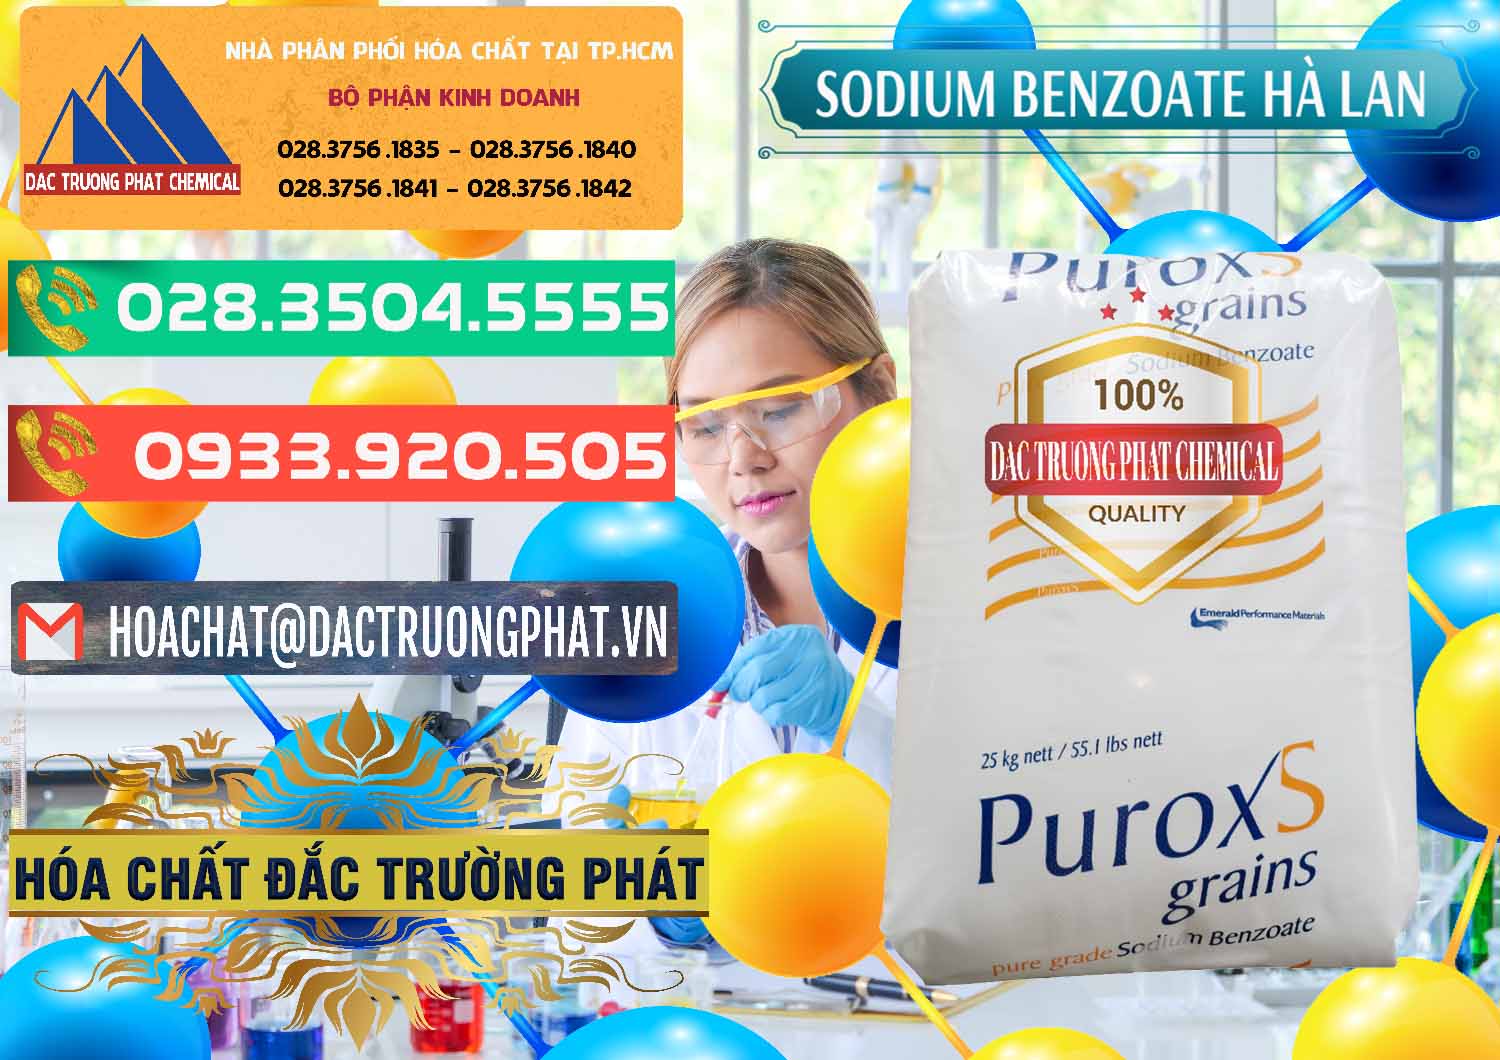 Đơn vị chuyên bán _ phân phối Sodium Benzoate - Mốc Bột Puroxs Hà Lan Netherlands - 0467 - Nơi bán - cung cấp hóa chất tại TP.HCM - congtyhoachat.com.vn